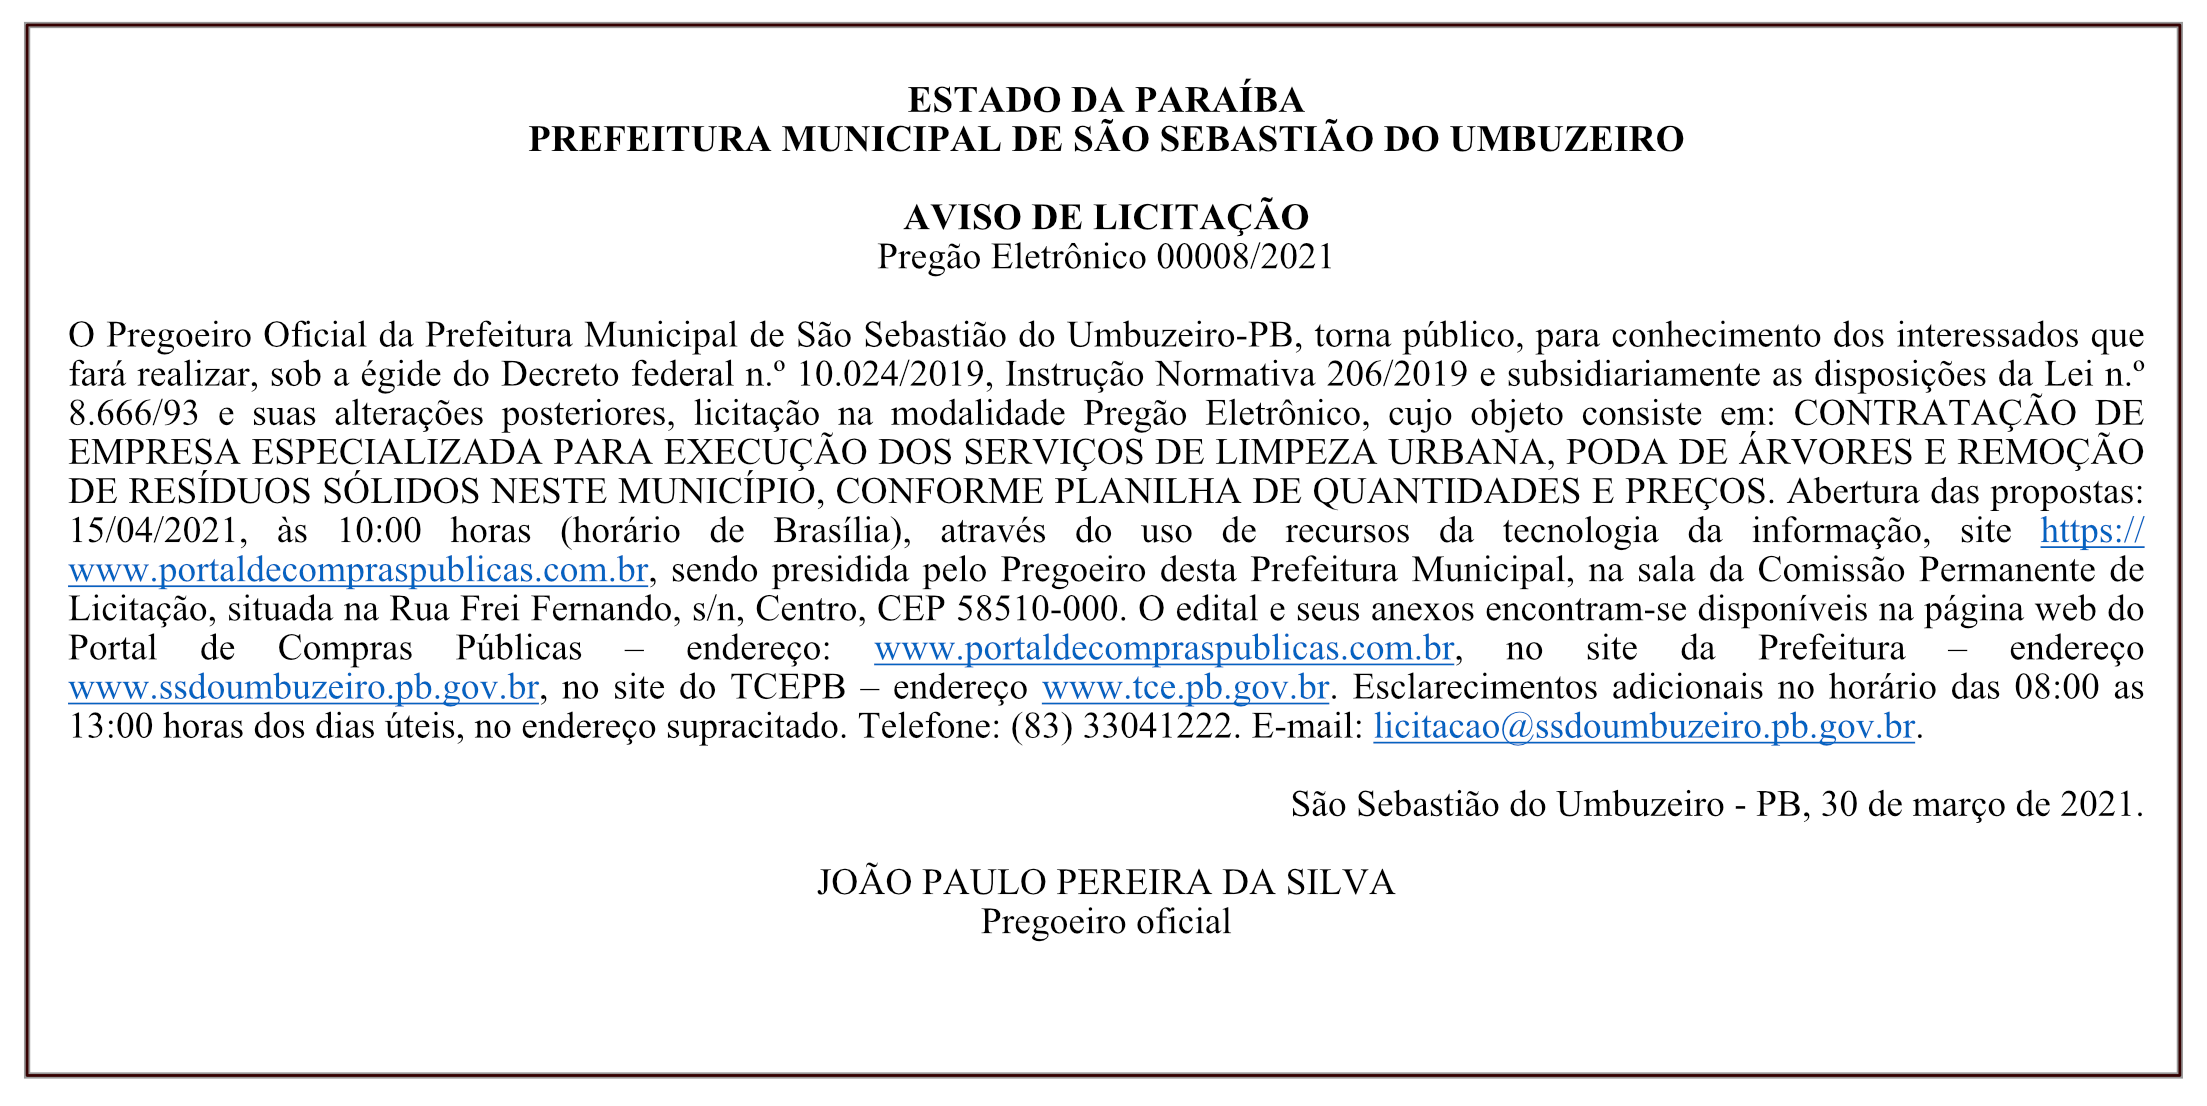 PREFEITURA MUNICIPAL DE SÃO SEBASTIÃO DO UMBUZEIRO – AVISO DE LICITAÇÃO – Pregão Eletrônico 00008/2021